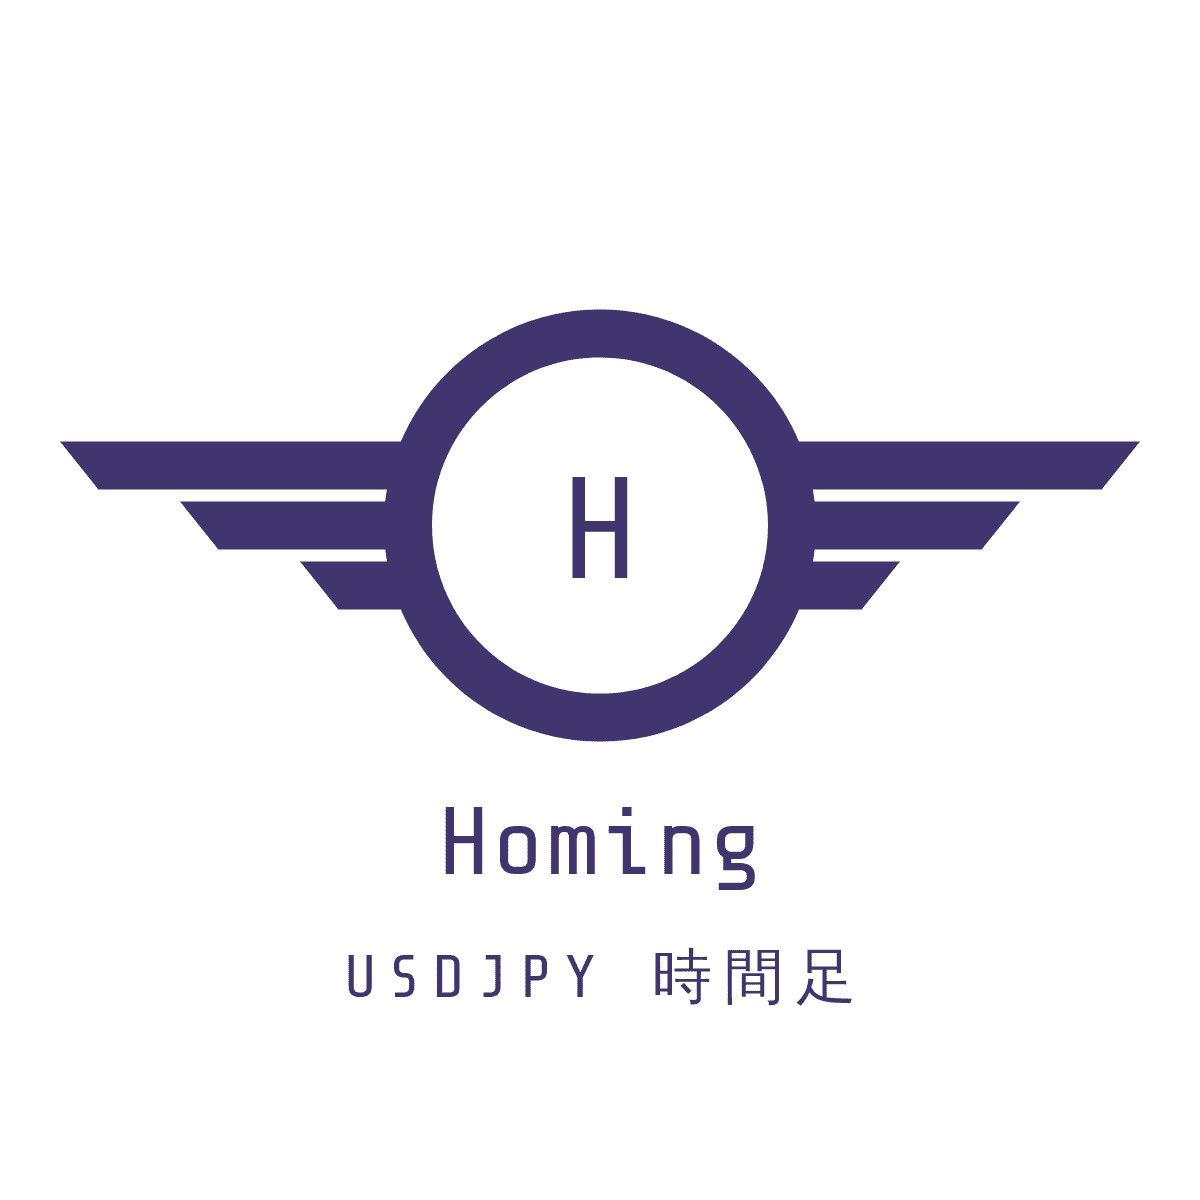 Homing USDJPY 時間足 ซื้อขายอัตโนมัติ